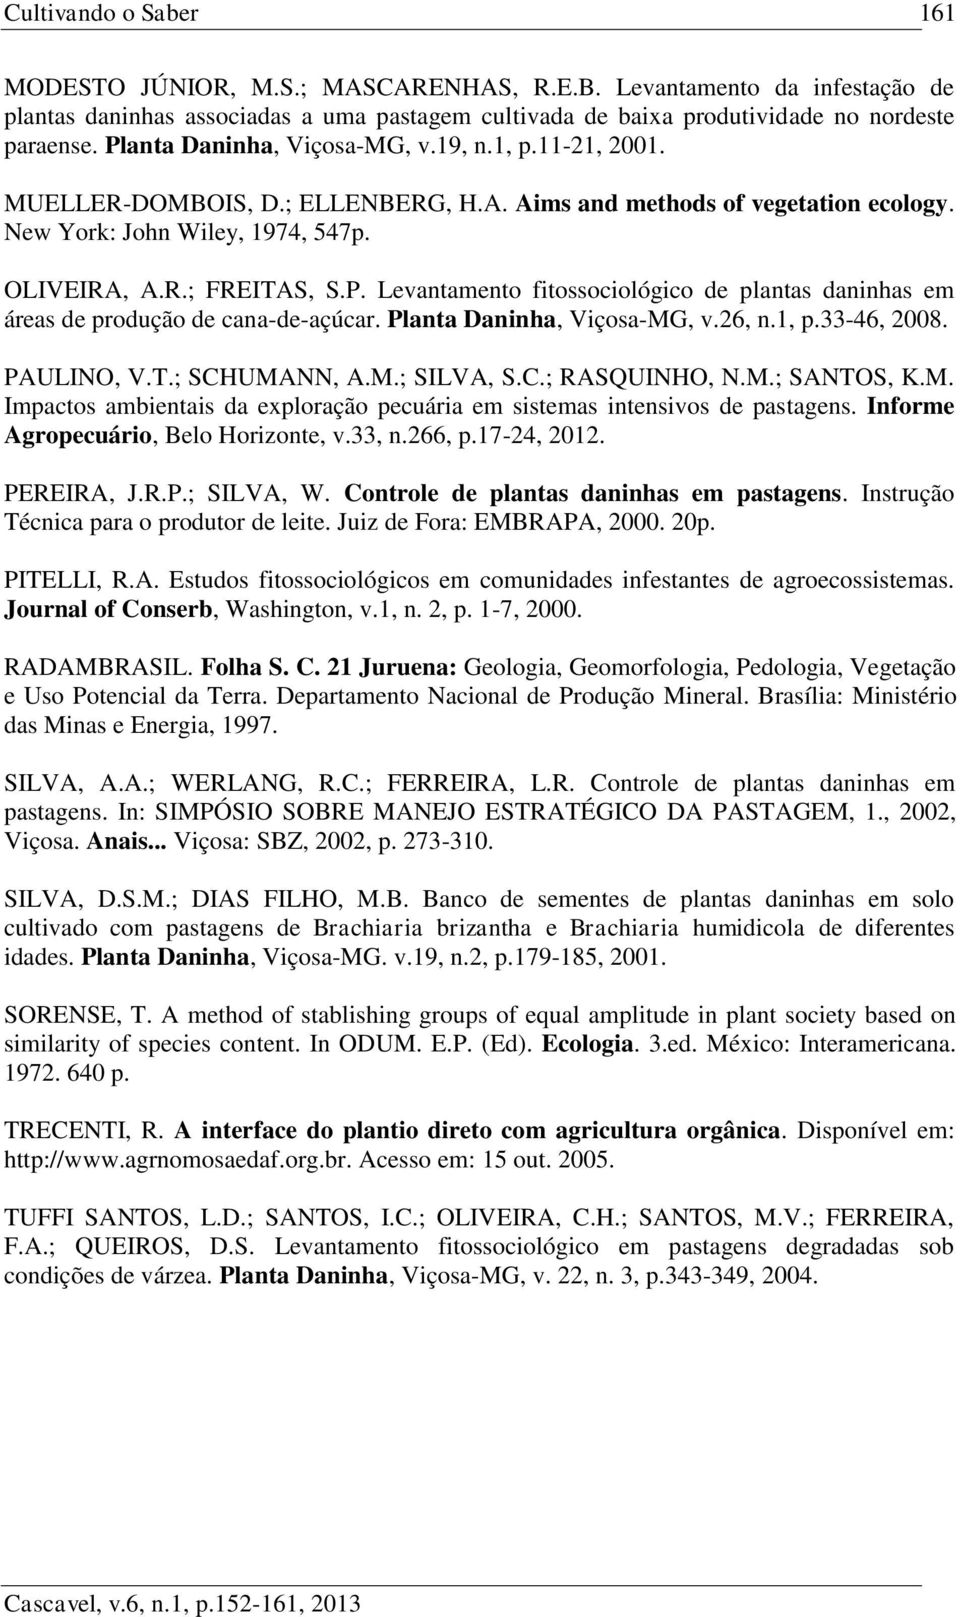 Planta Daninha, Viçosa-MG, v.26, n.1, p.33-46, 2008. PAULINO, V.T.; SCHUMANN, A.M.; SILVA, S.C.; RASQUINHO, N.M.; SANTOS, K.M. Impactos ambientais da exploração pecuária em sistemas intensivos de pastagens.